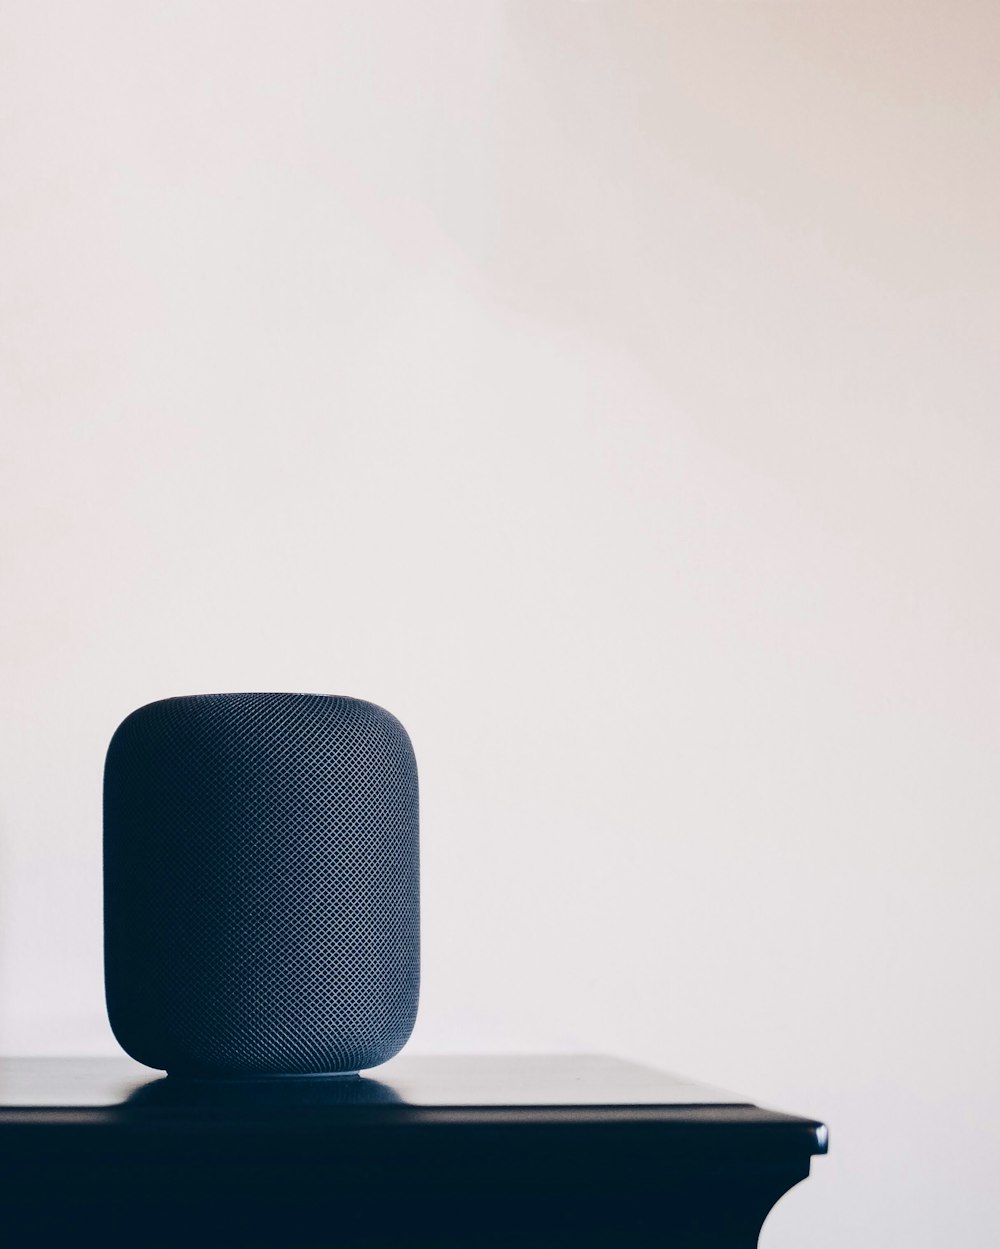 haut-parleur Apple HomePod noir sur table